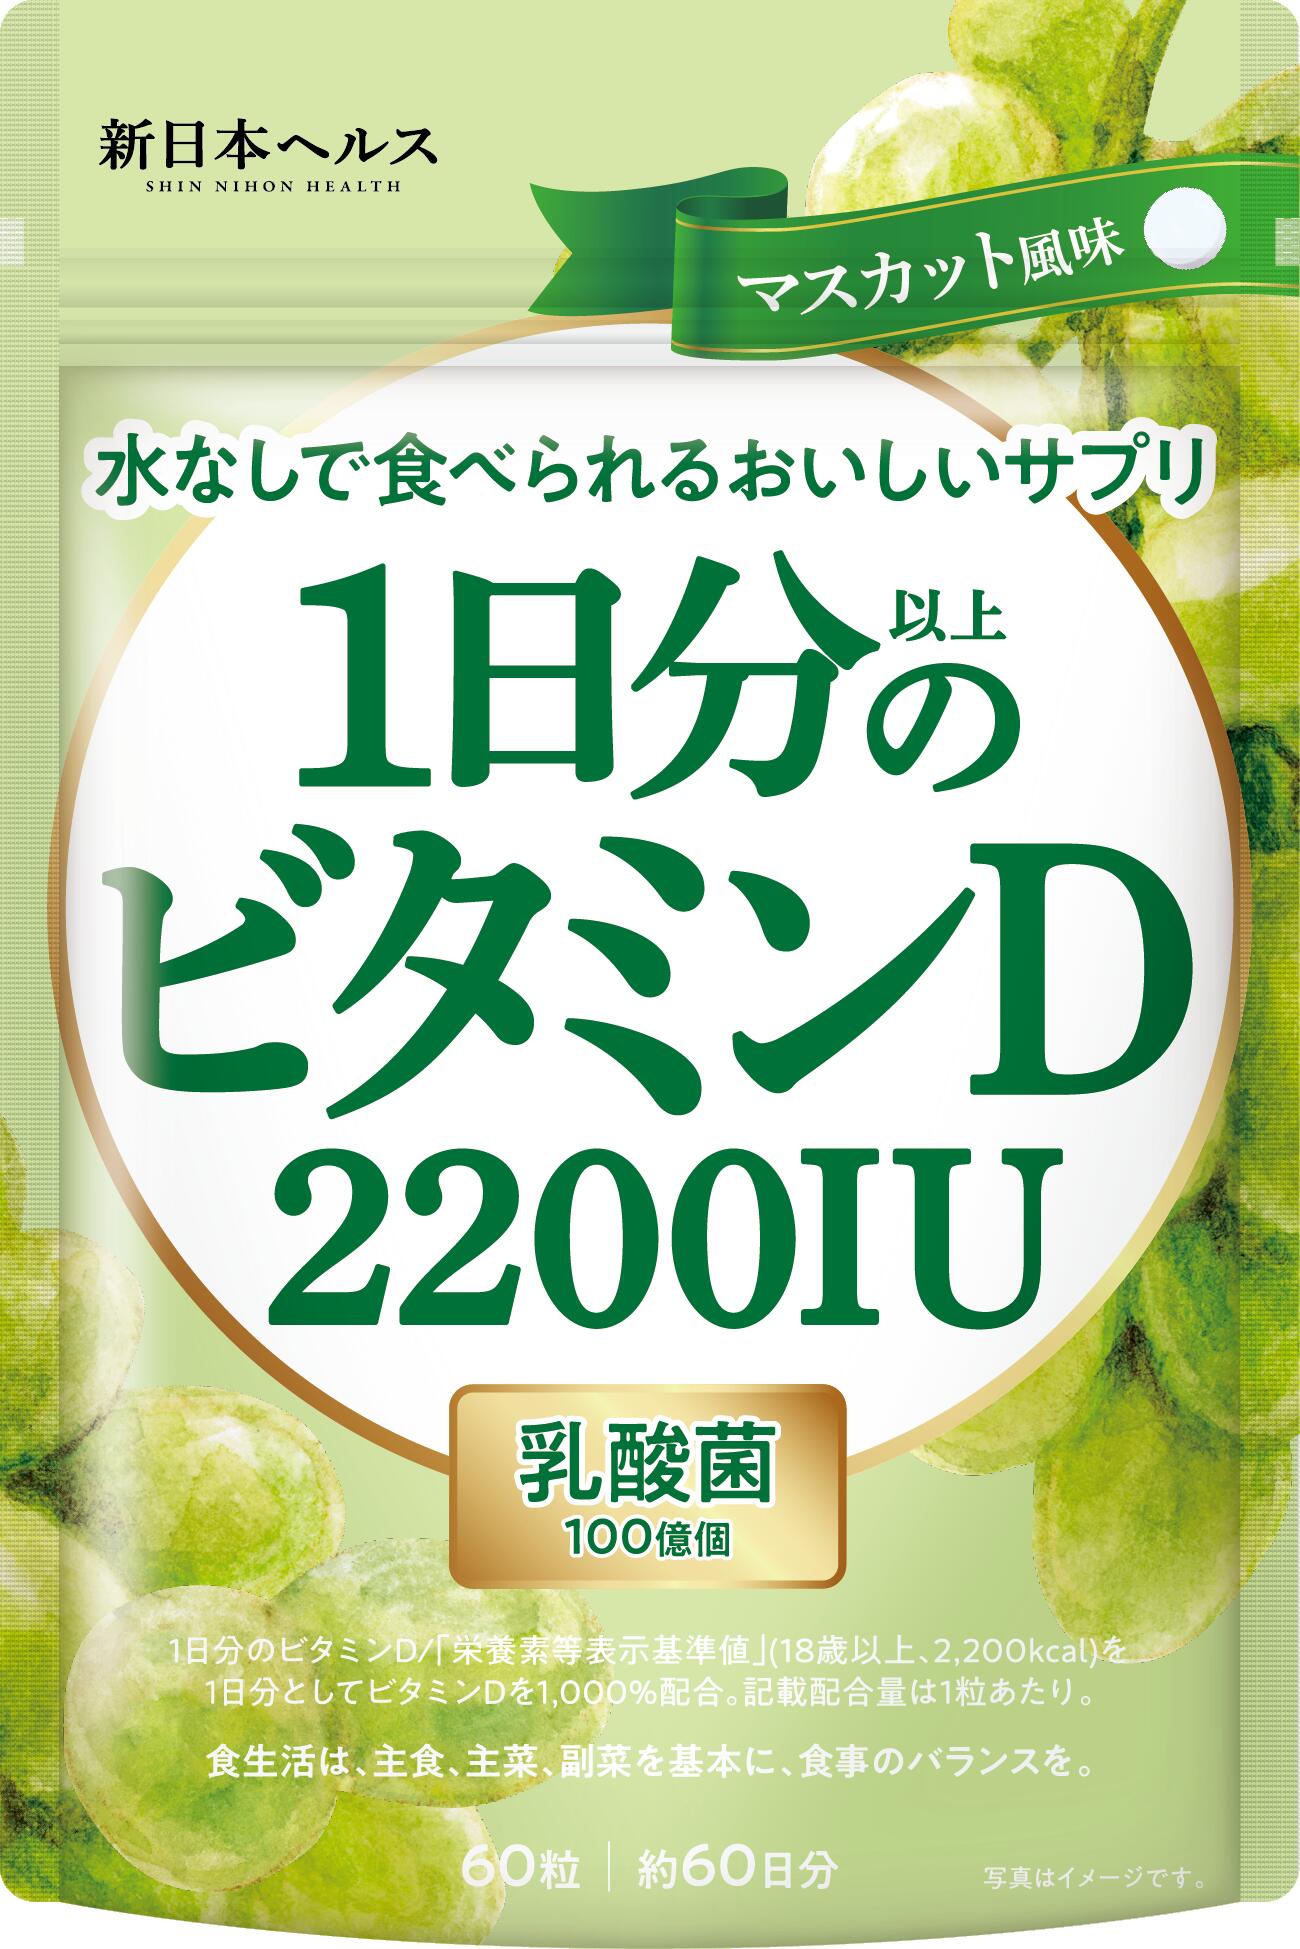 1日分以上のビタミンD ビタミンD 2200IU 乳酸菌100億個入り マスカット風味 60粒 60日分 サプリ サプリメント マスカット風味 新日本ヘルス